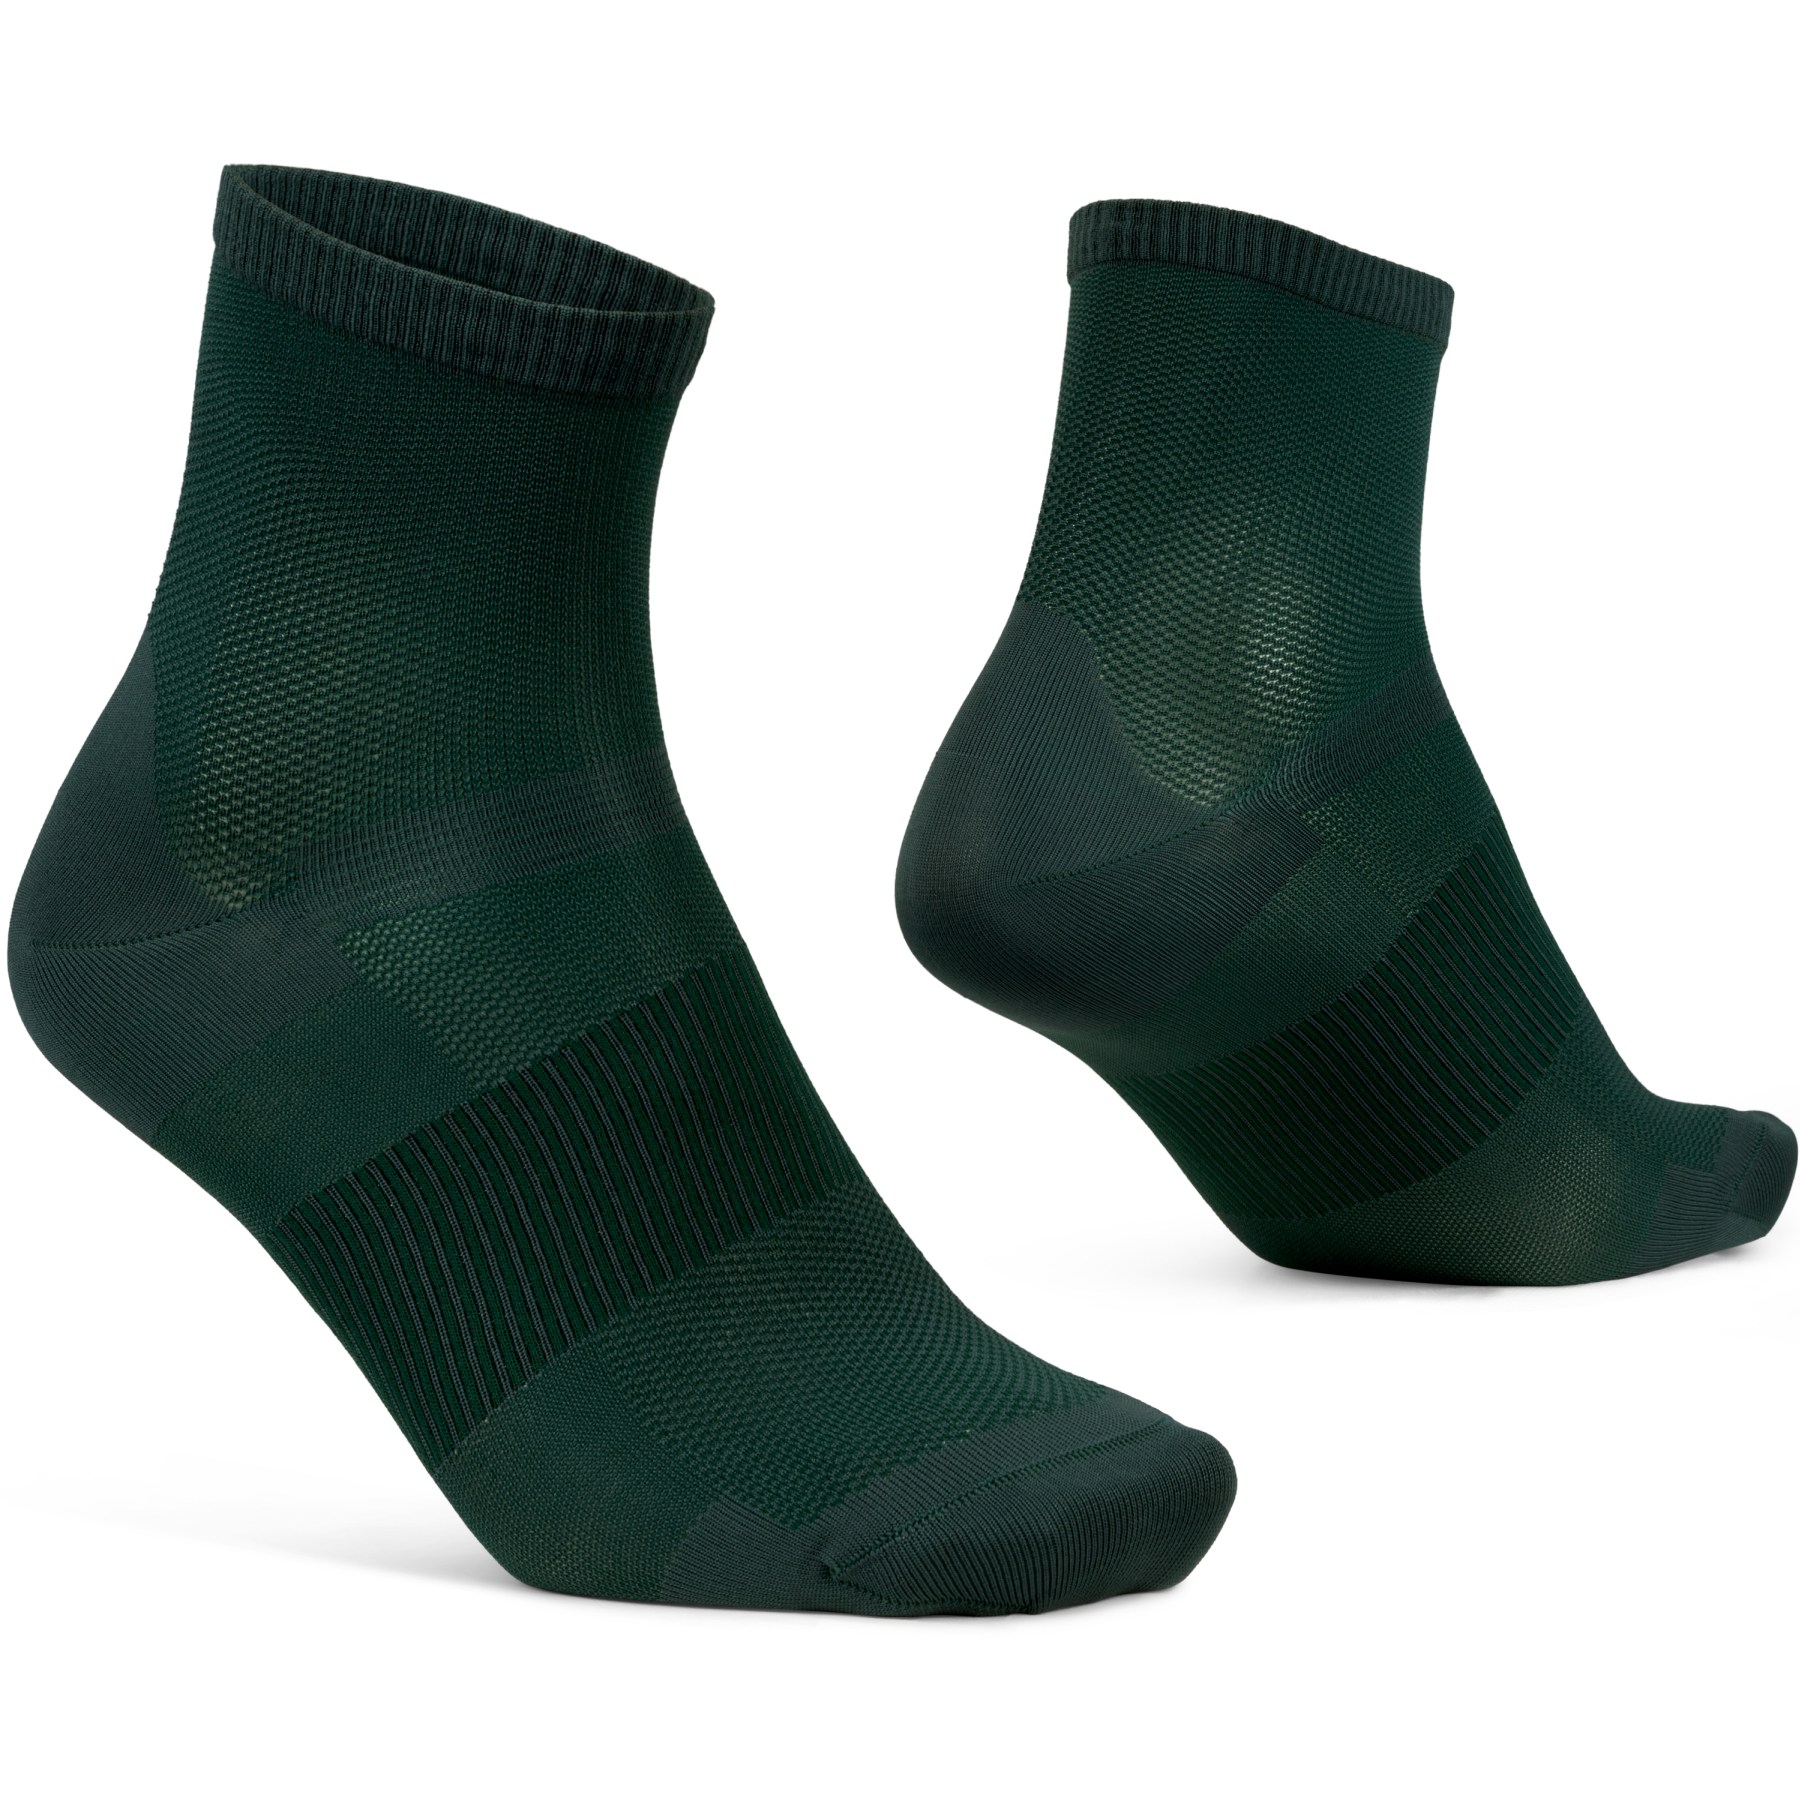 Produktbild von GripGrab Lightweight Airflow Short Socken - Grün